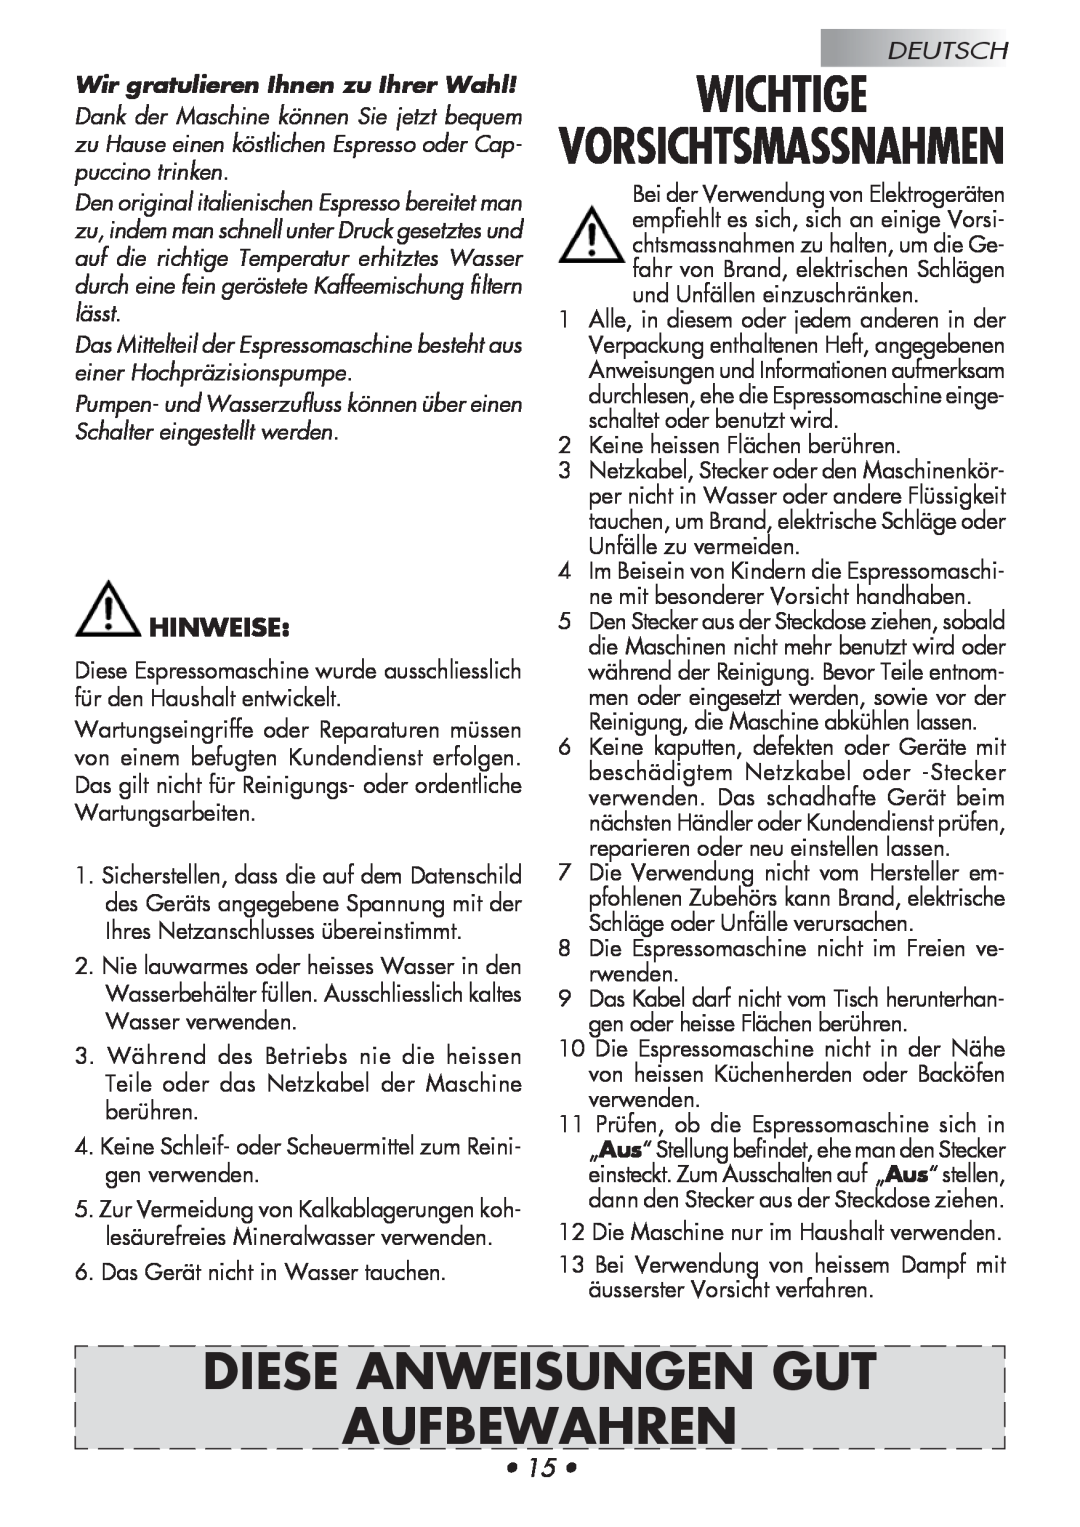 Gaggia Baby manual Wichtige, Diese Anweisungen Gut Aufbewahren, Hinweise, Wir gratulieren Ihnen zu Ihrer Wahl, Deutsch 